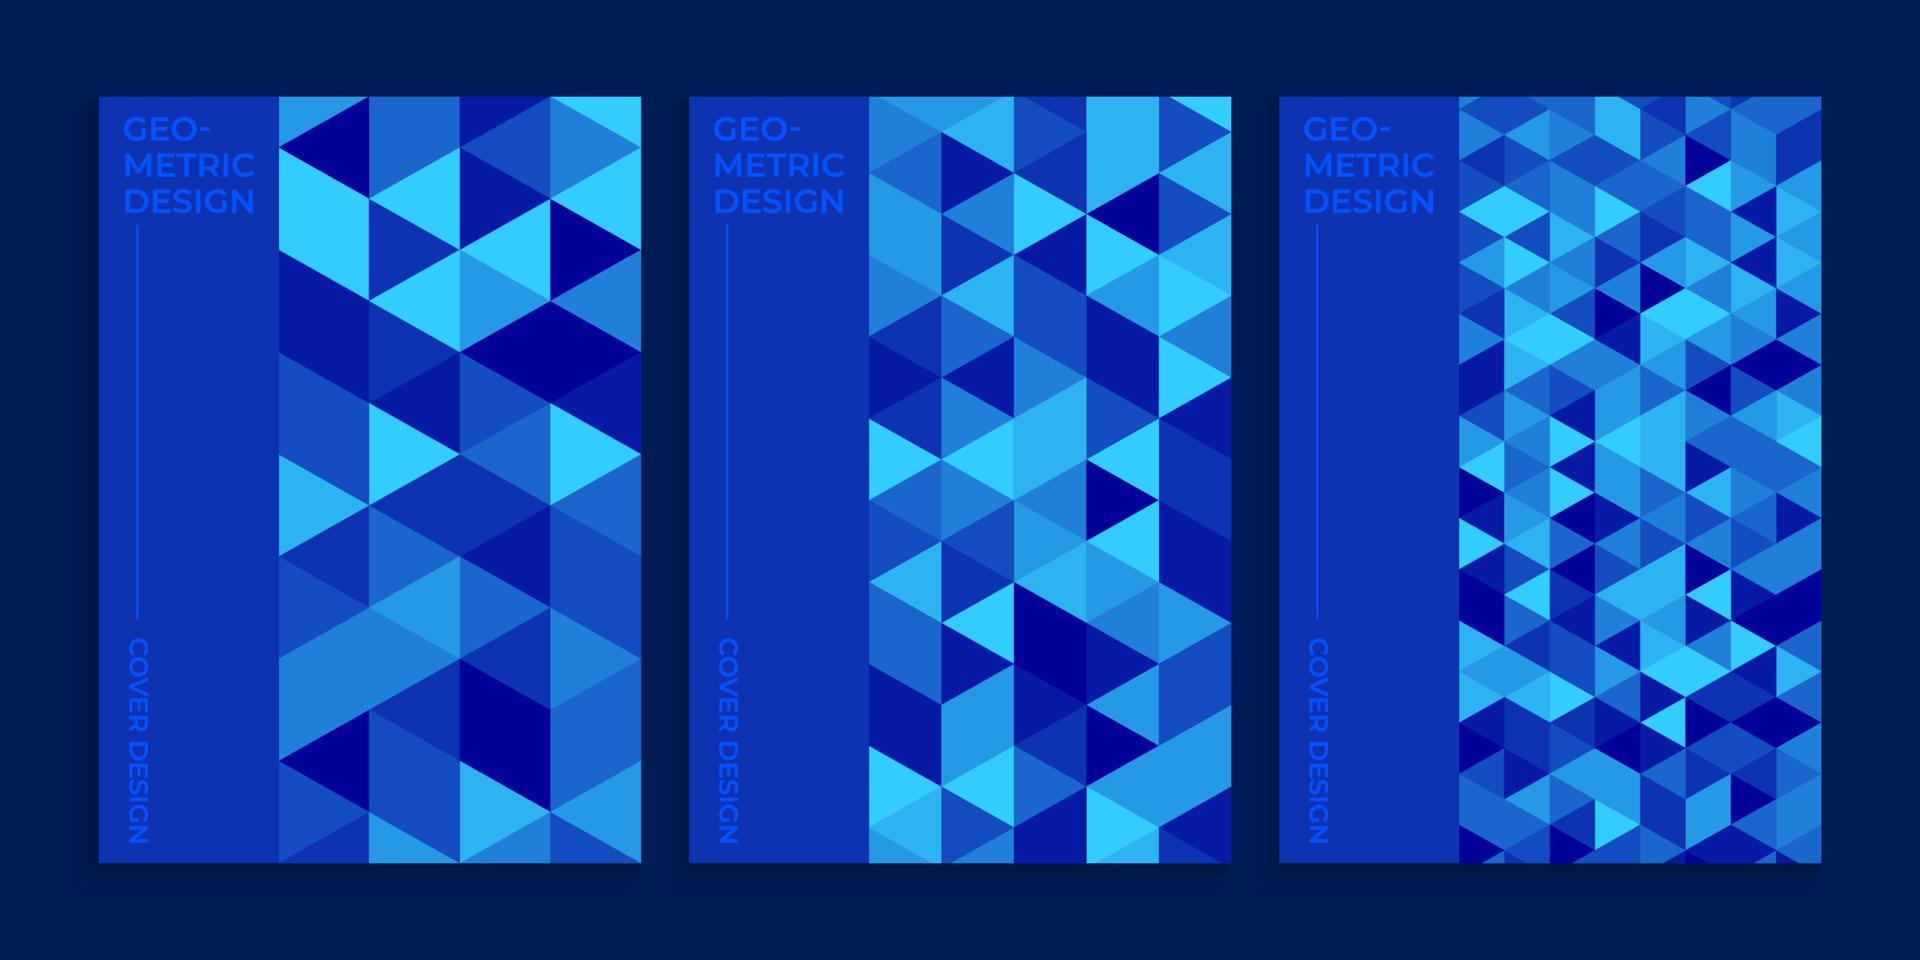 couverture de livre bleue avec un design géométrique, ensemble de conception de couverture bleue minimale vecteur